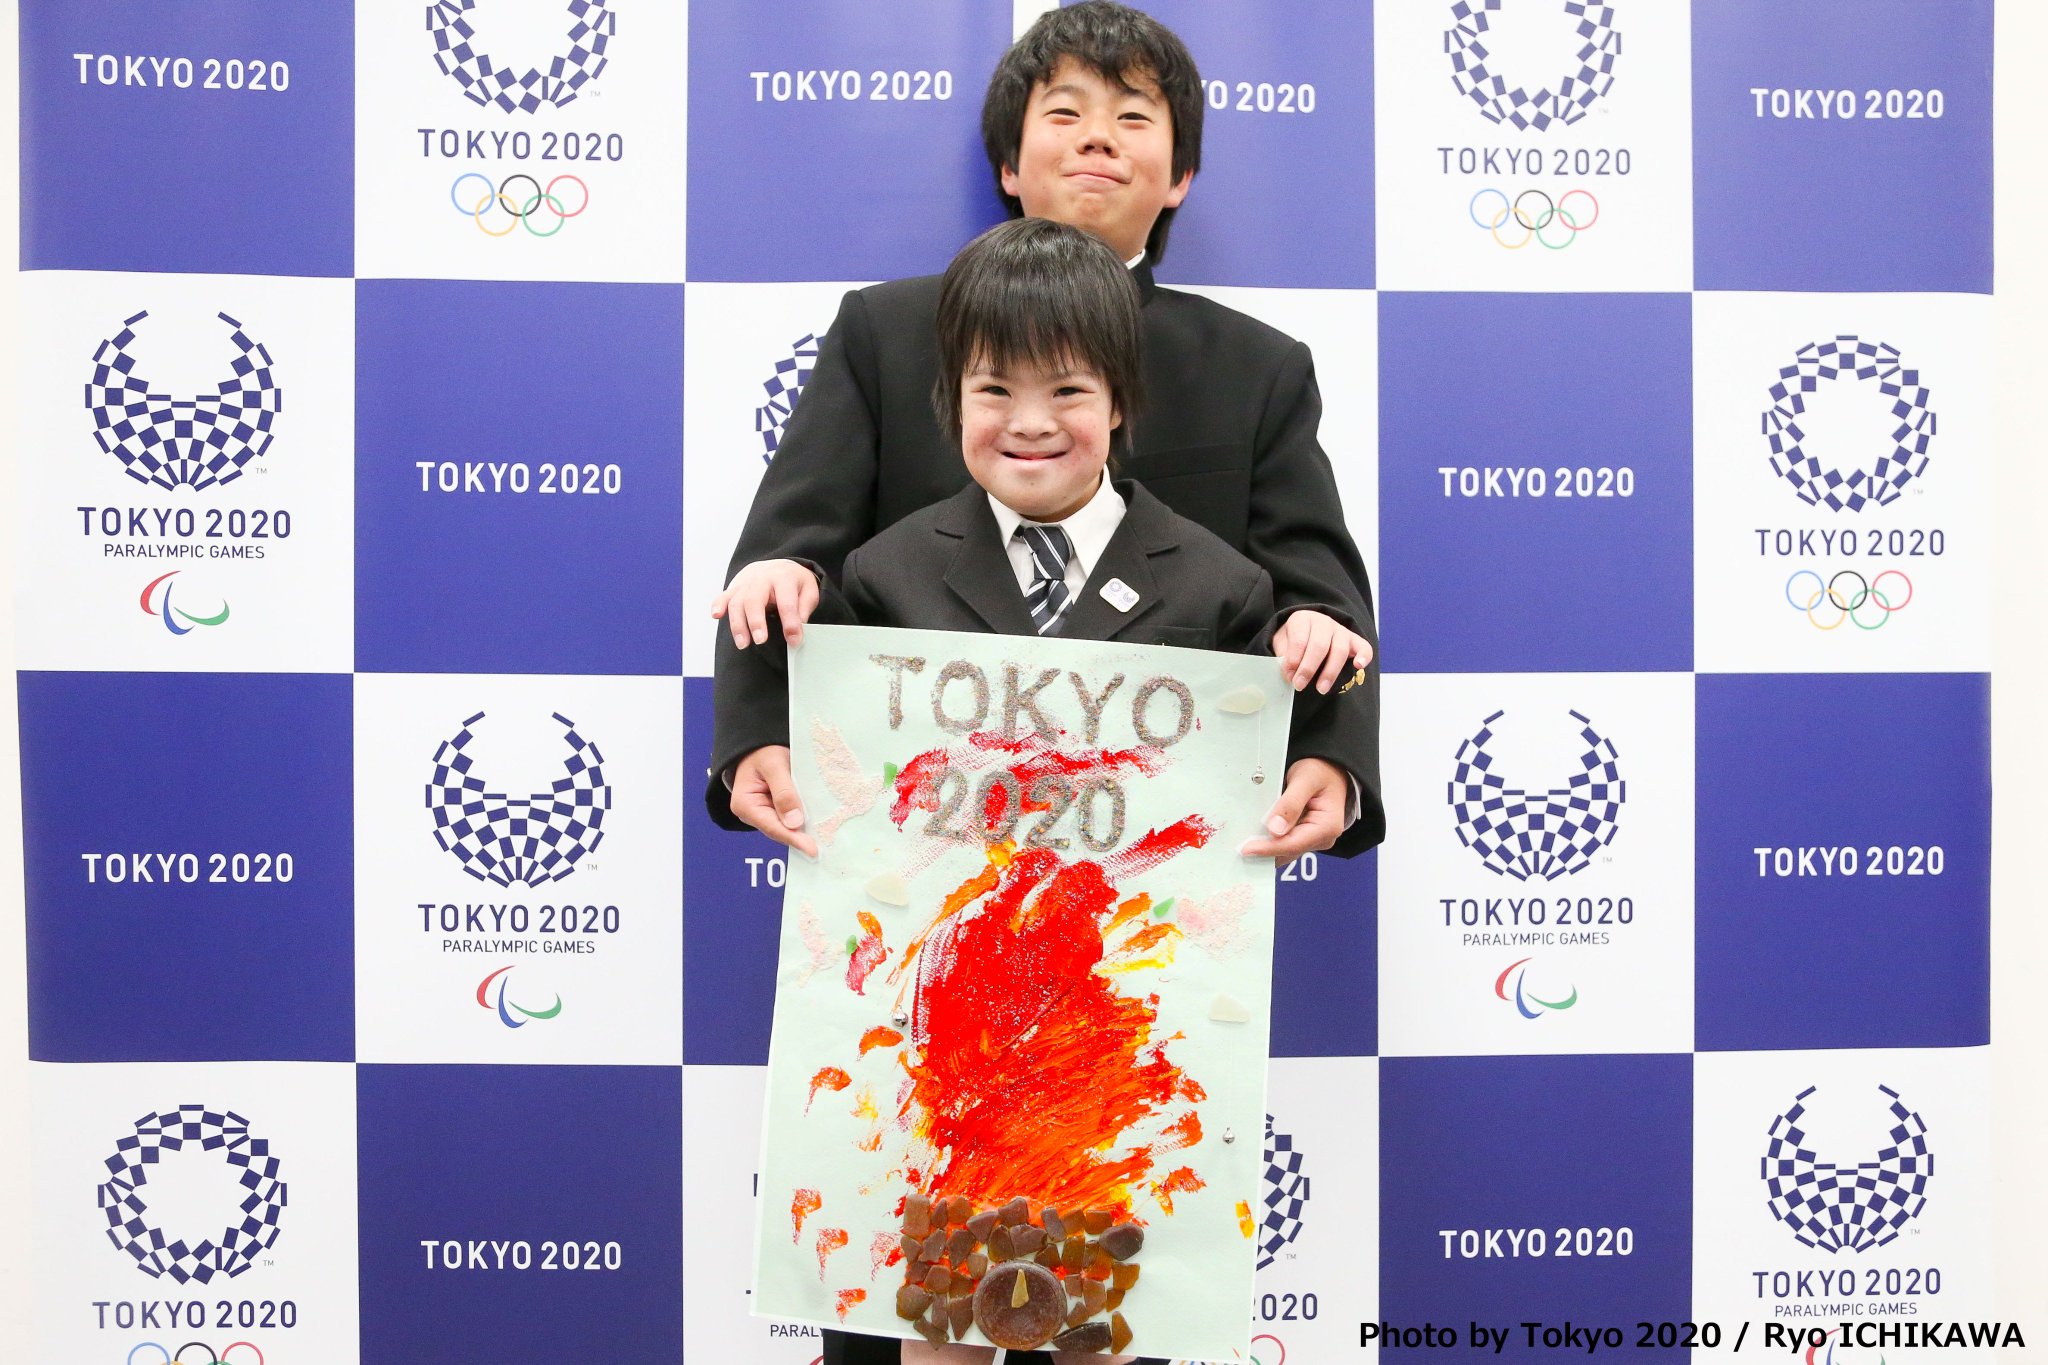 Tokyo たくさんの小中学生の生徒の皆さんと一緒に Tokyo を創りあげていきたいという想いでスタートした 小 中学生ポスター募集 こちらは26 292点の作品の中から見事金賞を受賞し 本日参加してくれた皆さんです おめでとうございます